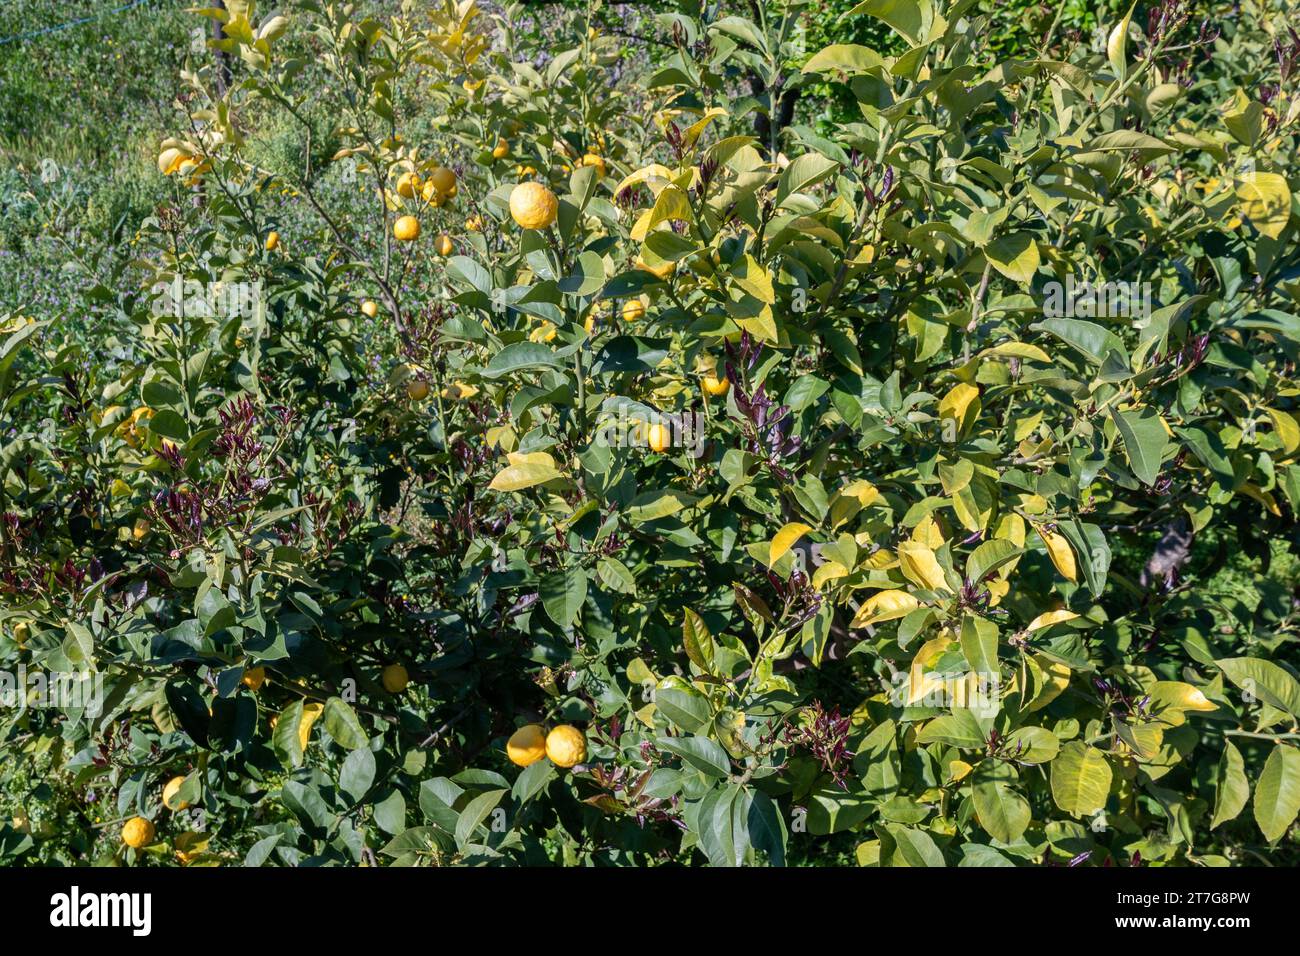 Vue en grand angle d'un citron, une espèce de petit arbre à feuilles persistantes de la famille des plantes à fleurs Rutaceae, originaire d'Asie, Savone, Ligurie, Italie Banque D'Images